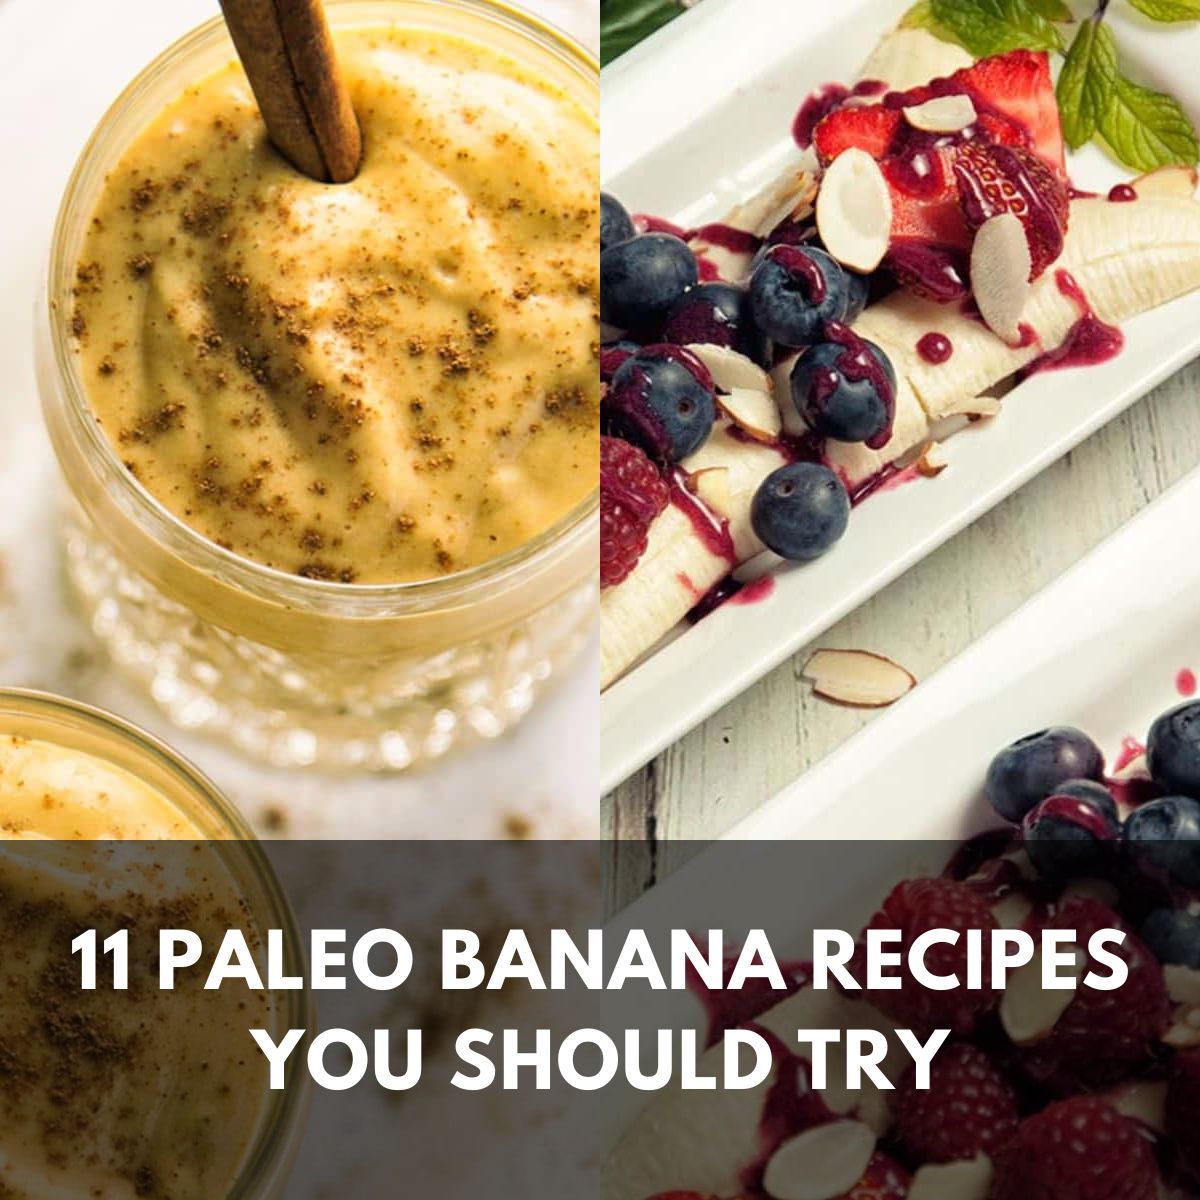 11 paleo banana recipes you should try main